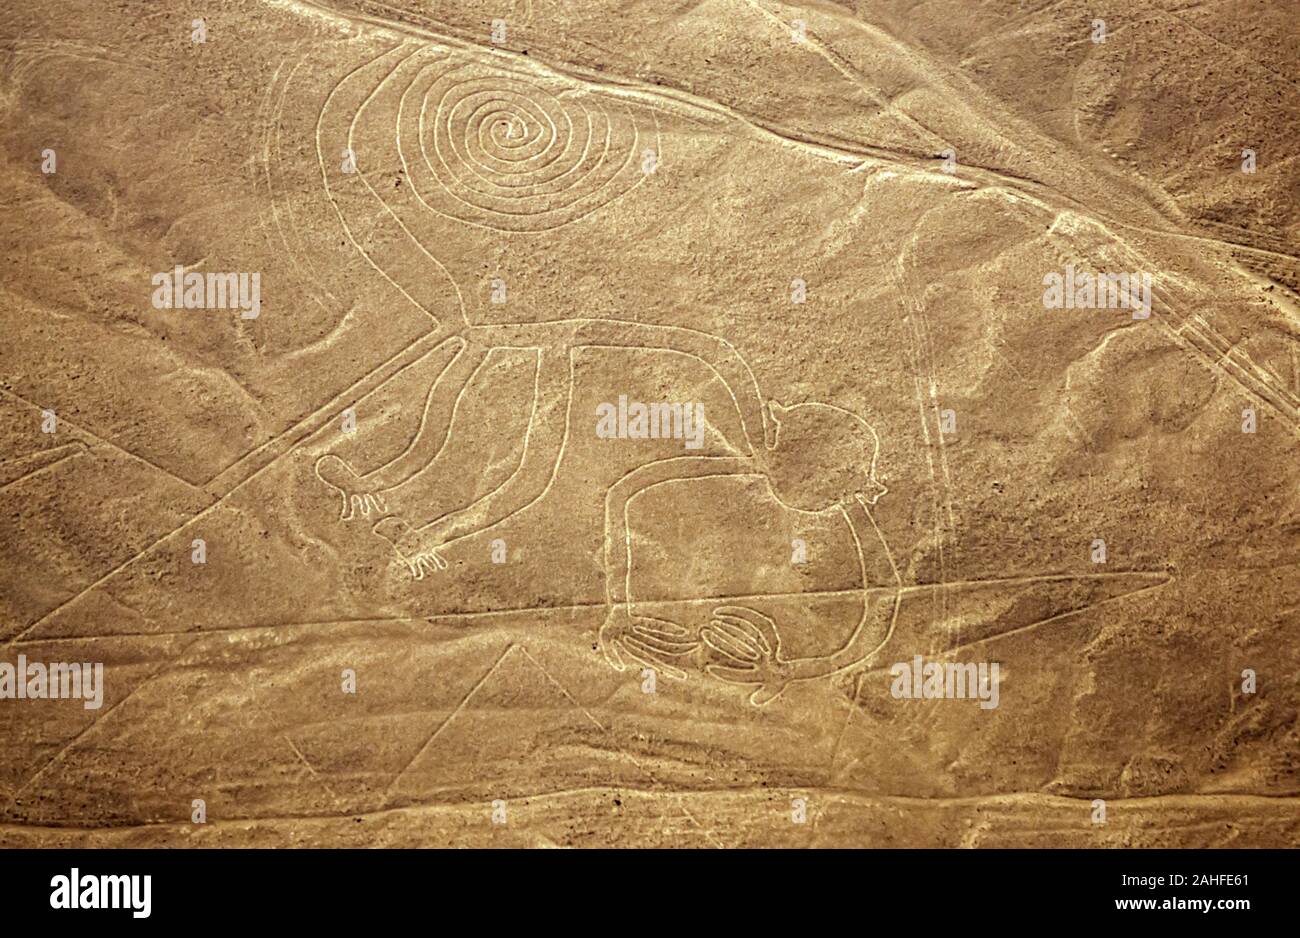 Vista aerea di una scimmia con una spirale di coda. Le linee di Nazca sono un gruppo molto grandi geoglifi formata da avvallamenti o poco profonde incisioni praticate nella Foto Stock